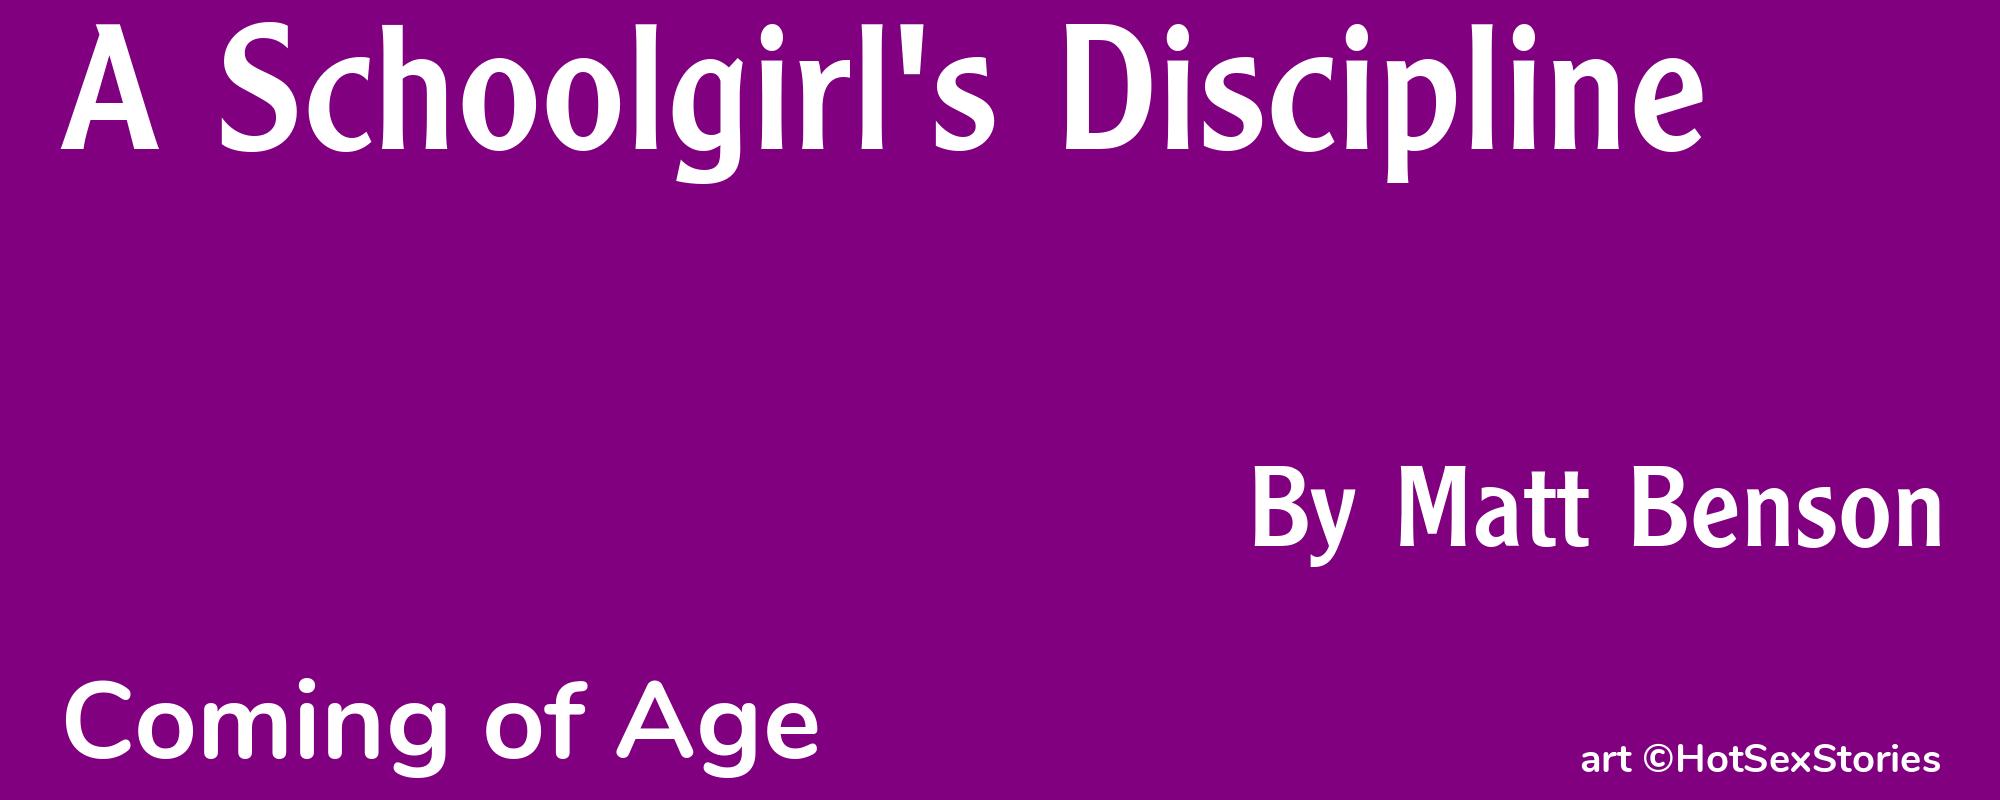 A Schoolgirl's Discipline - Cover